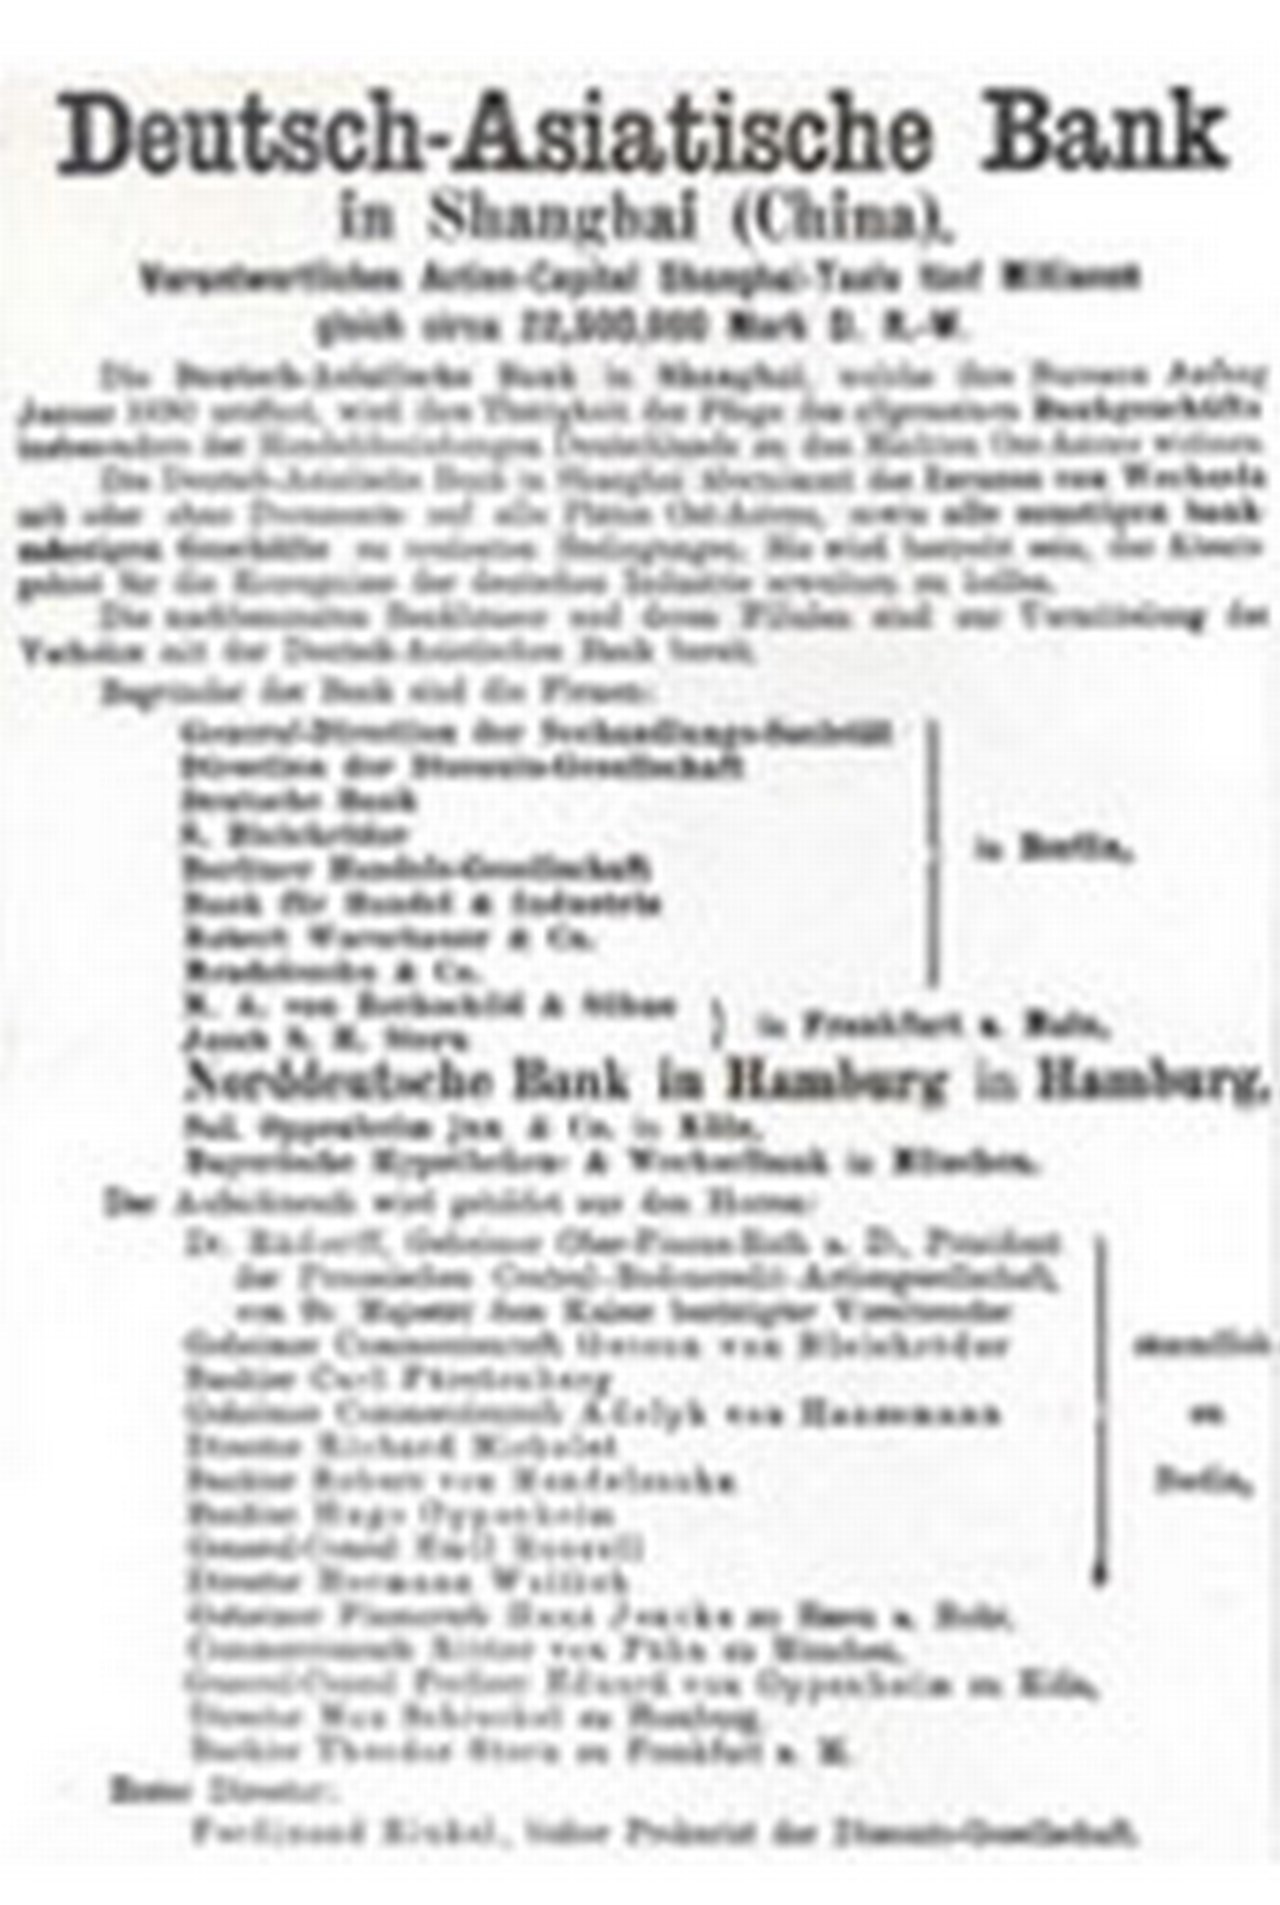 1889-Deutsche-Bank-Deutsch-Asiatische-Bank.jpg